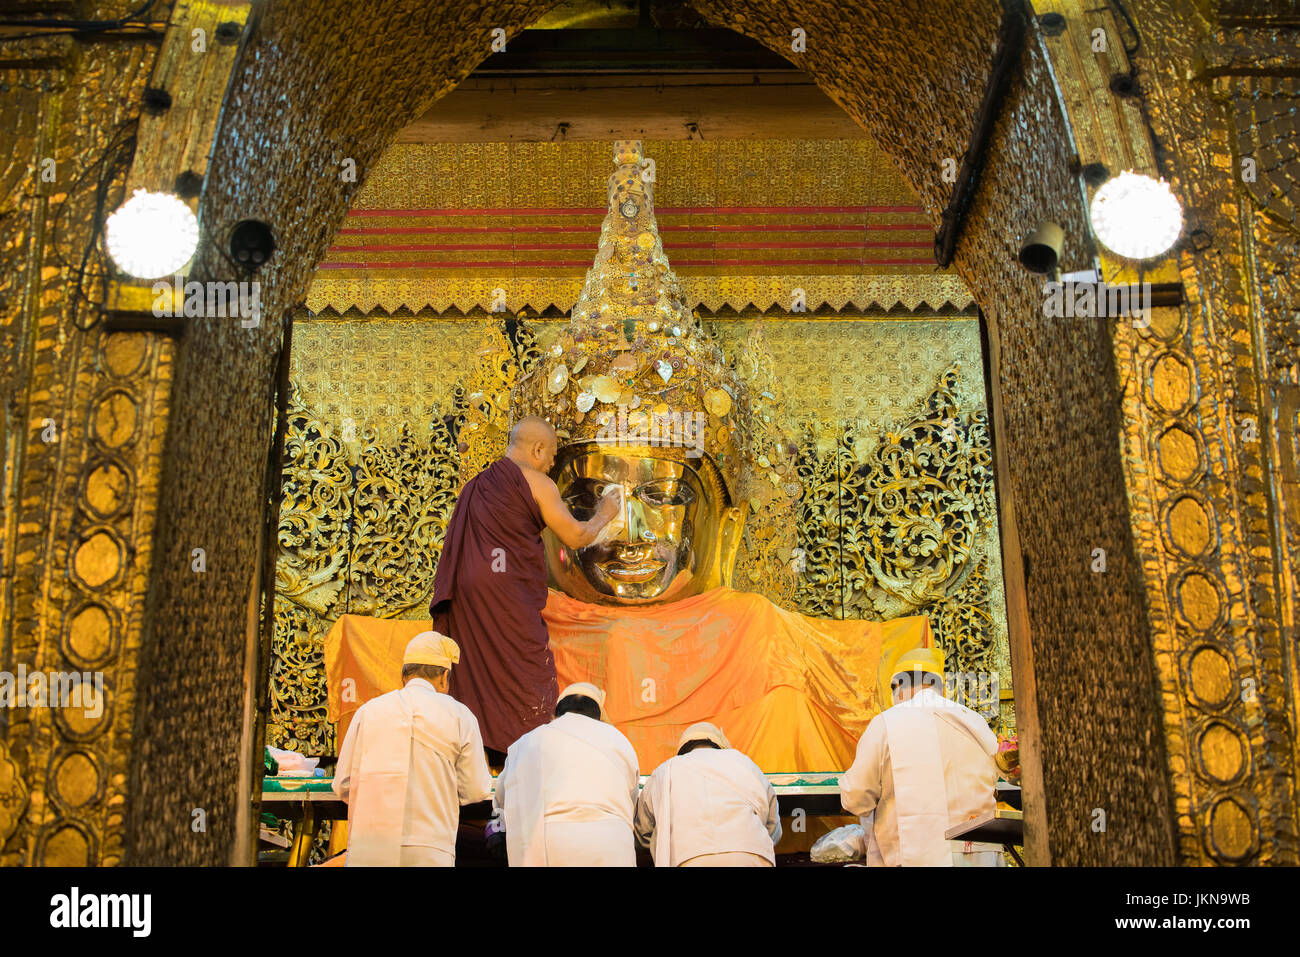 MANDALAY, MYANMAR - 2 février : Visite des peuples birman et prier à Temple du Bouddha Mahamuni, tôt le matin, rituel de lavage de visage de bouddha Mahamuni. C' Banque D'Images